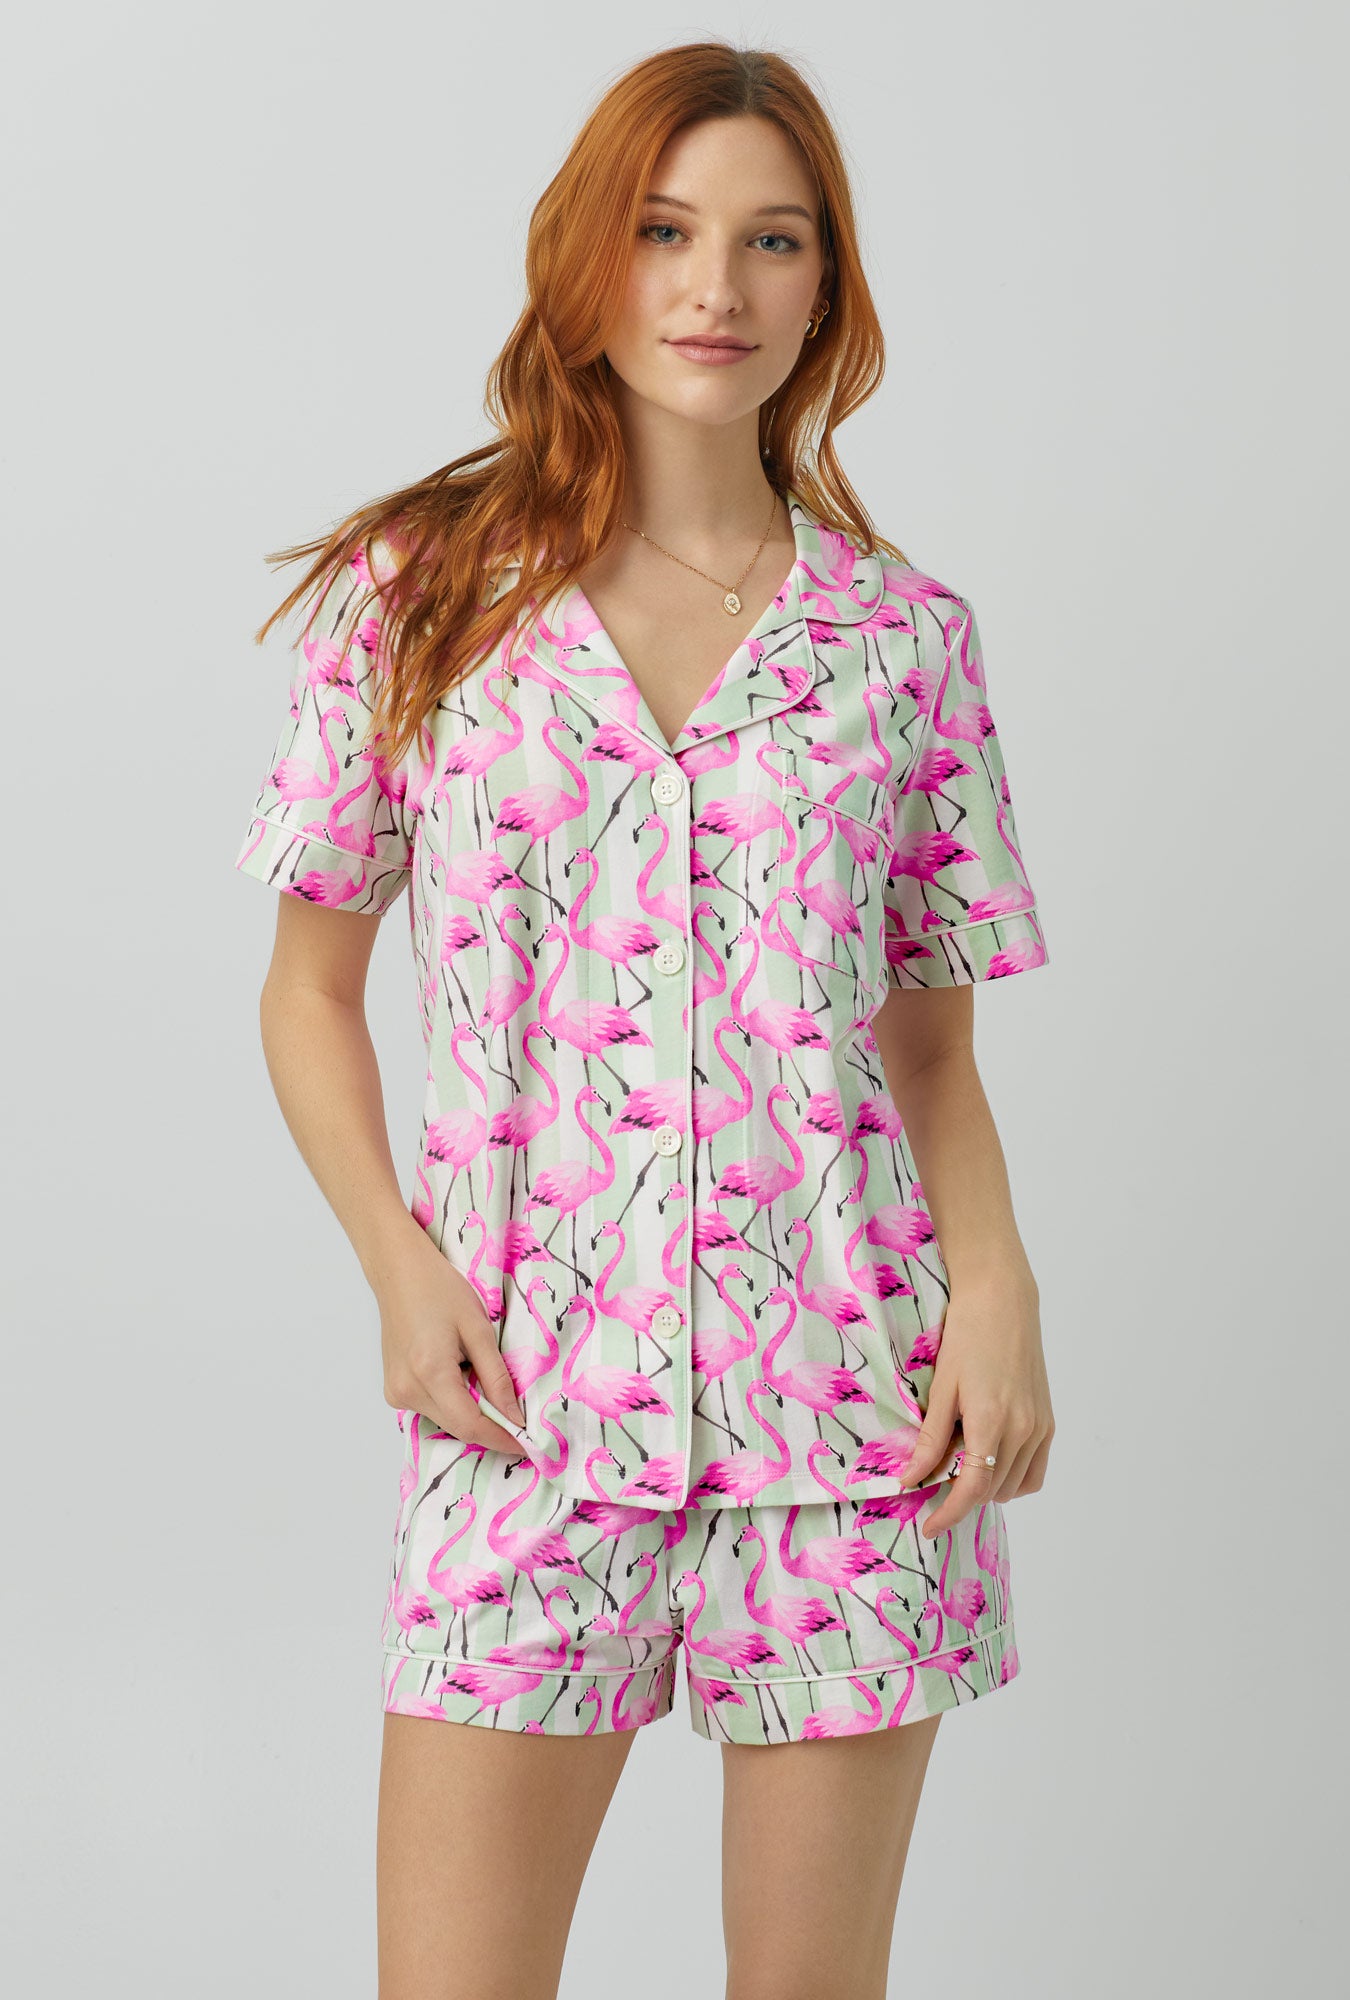 Floral Pajamas -  Canada